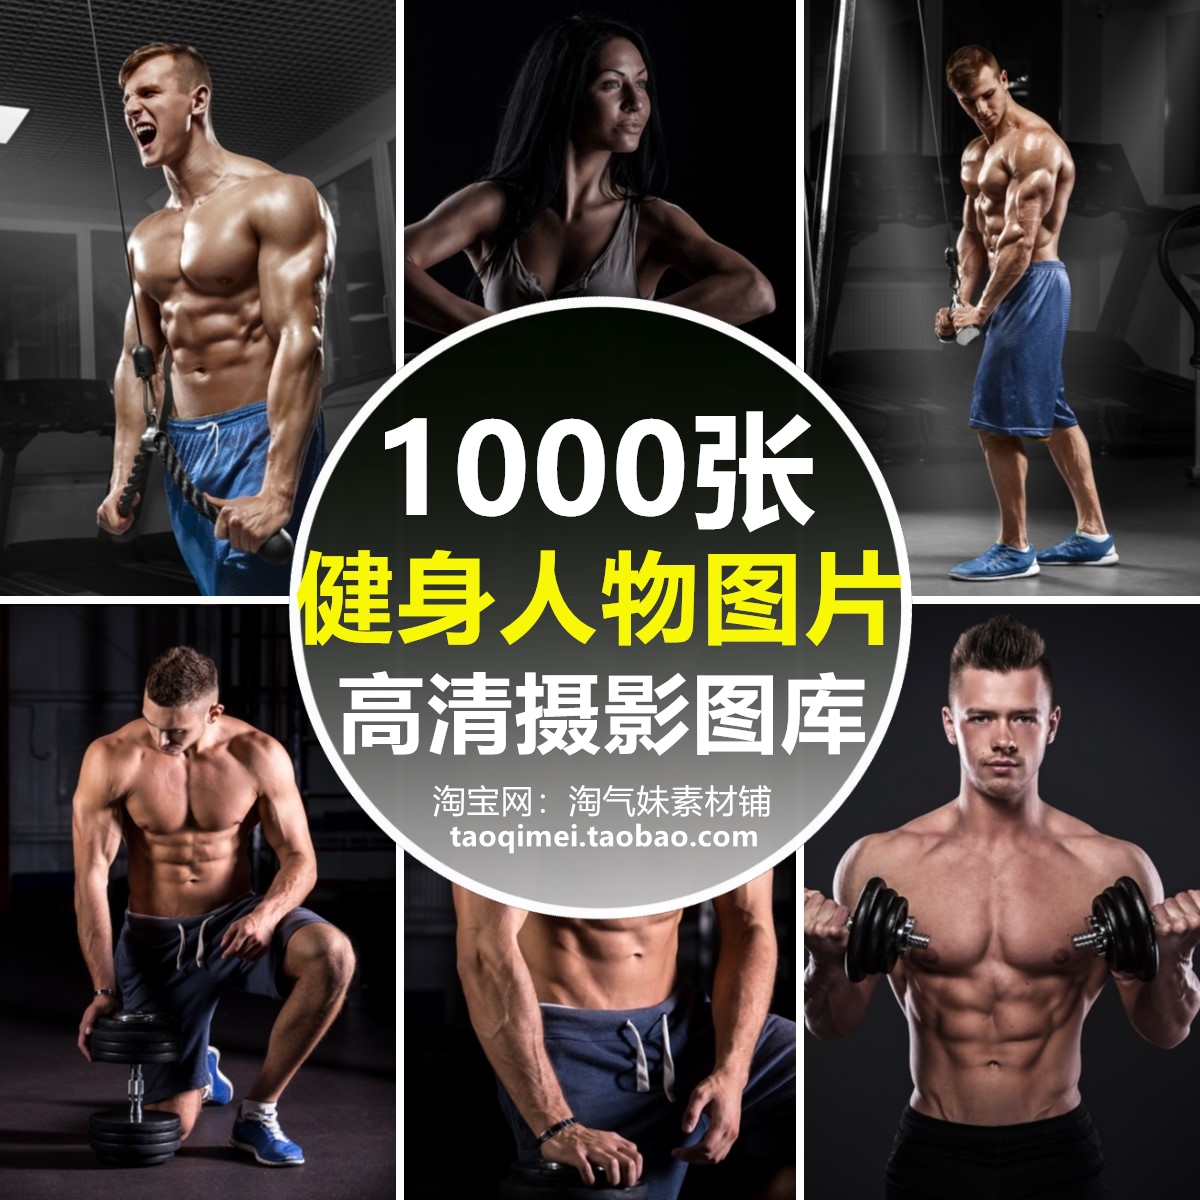 高清JPG外国人物健身背景图片肌肉猛男女运动健美房宣传海报素材